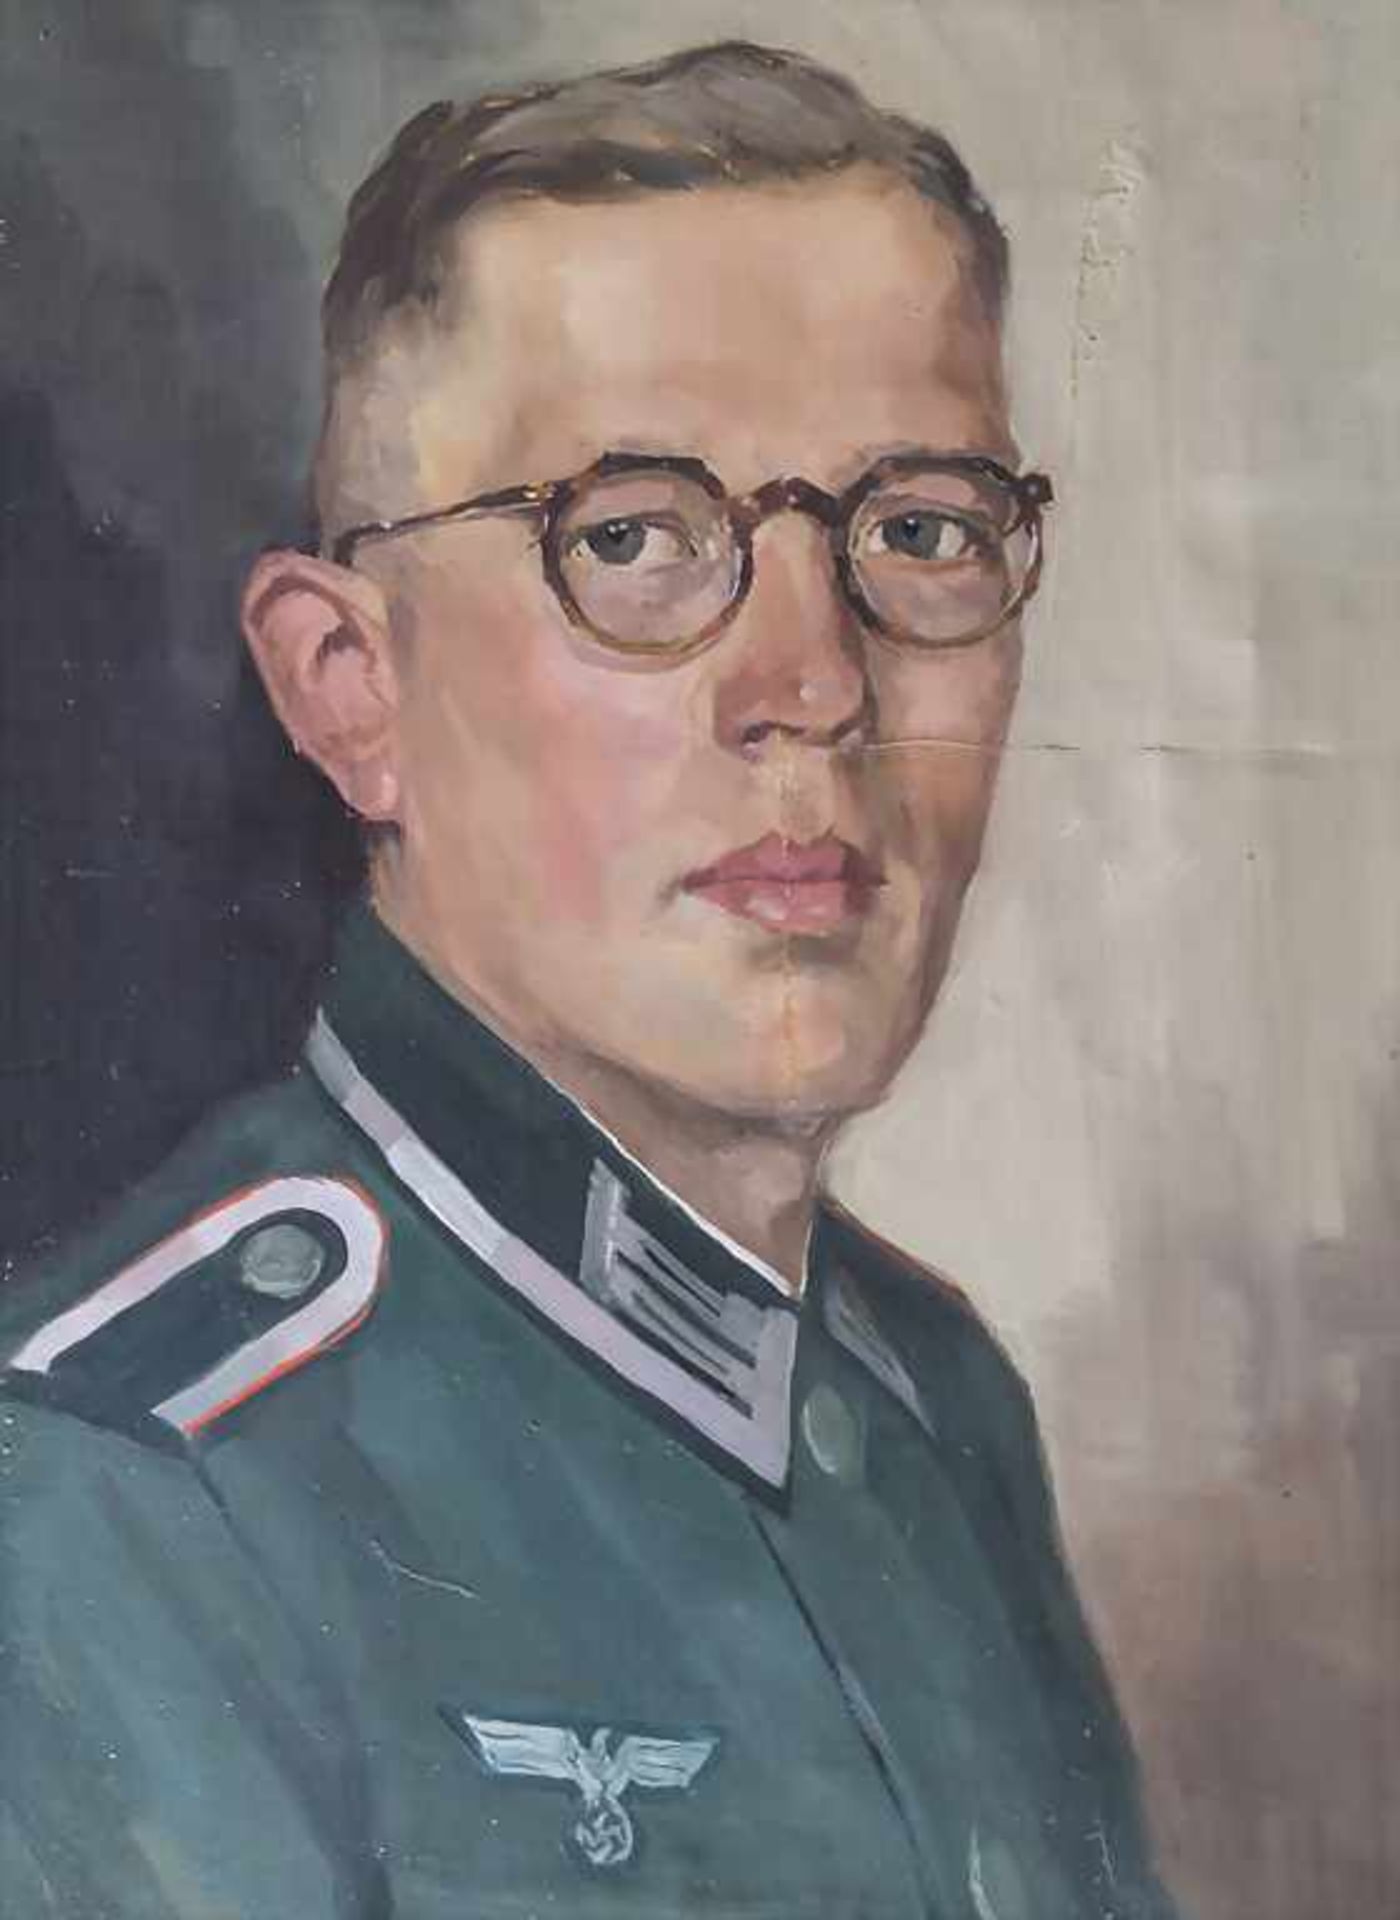 Künstler der 1930/40er Jahre, 'Soldat des 3. Reiches' / 'Soldier of the Third Reich'